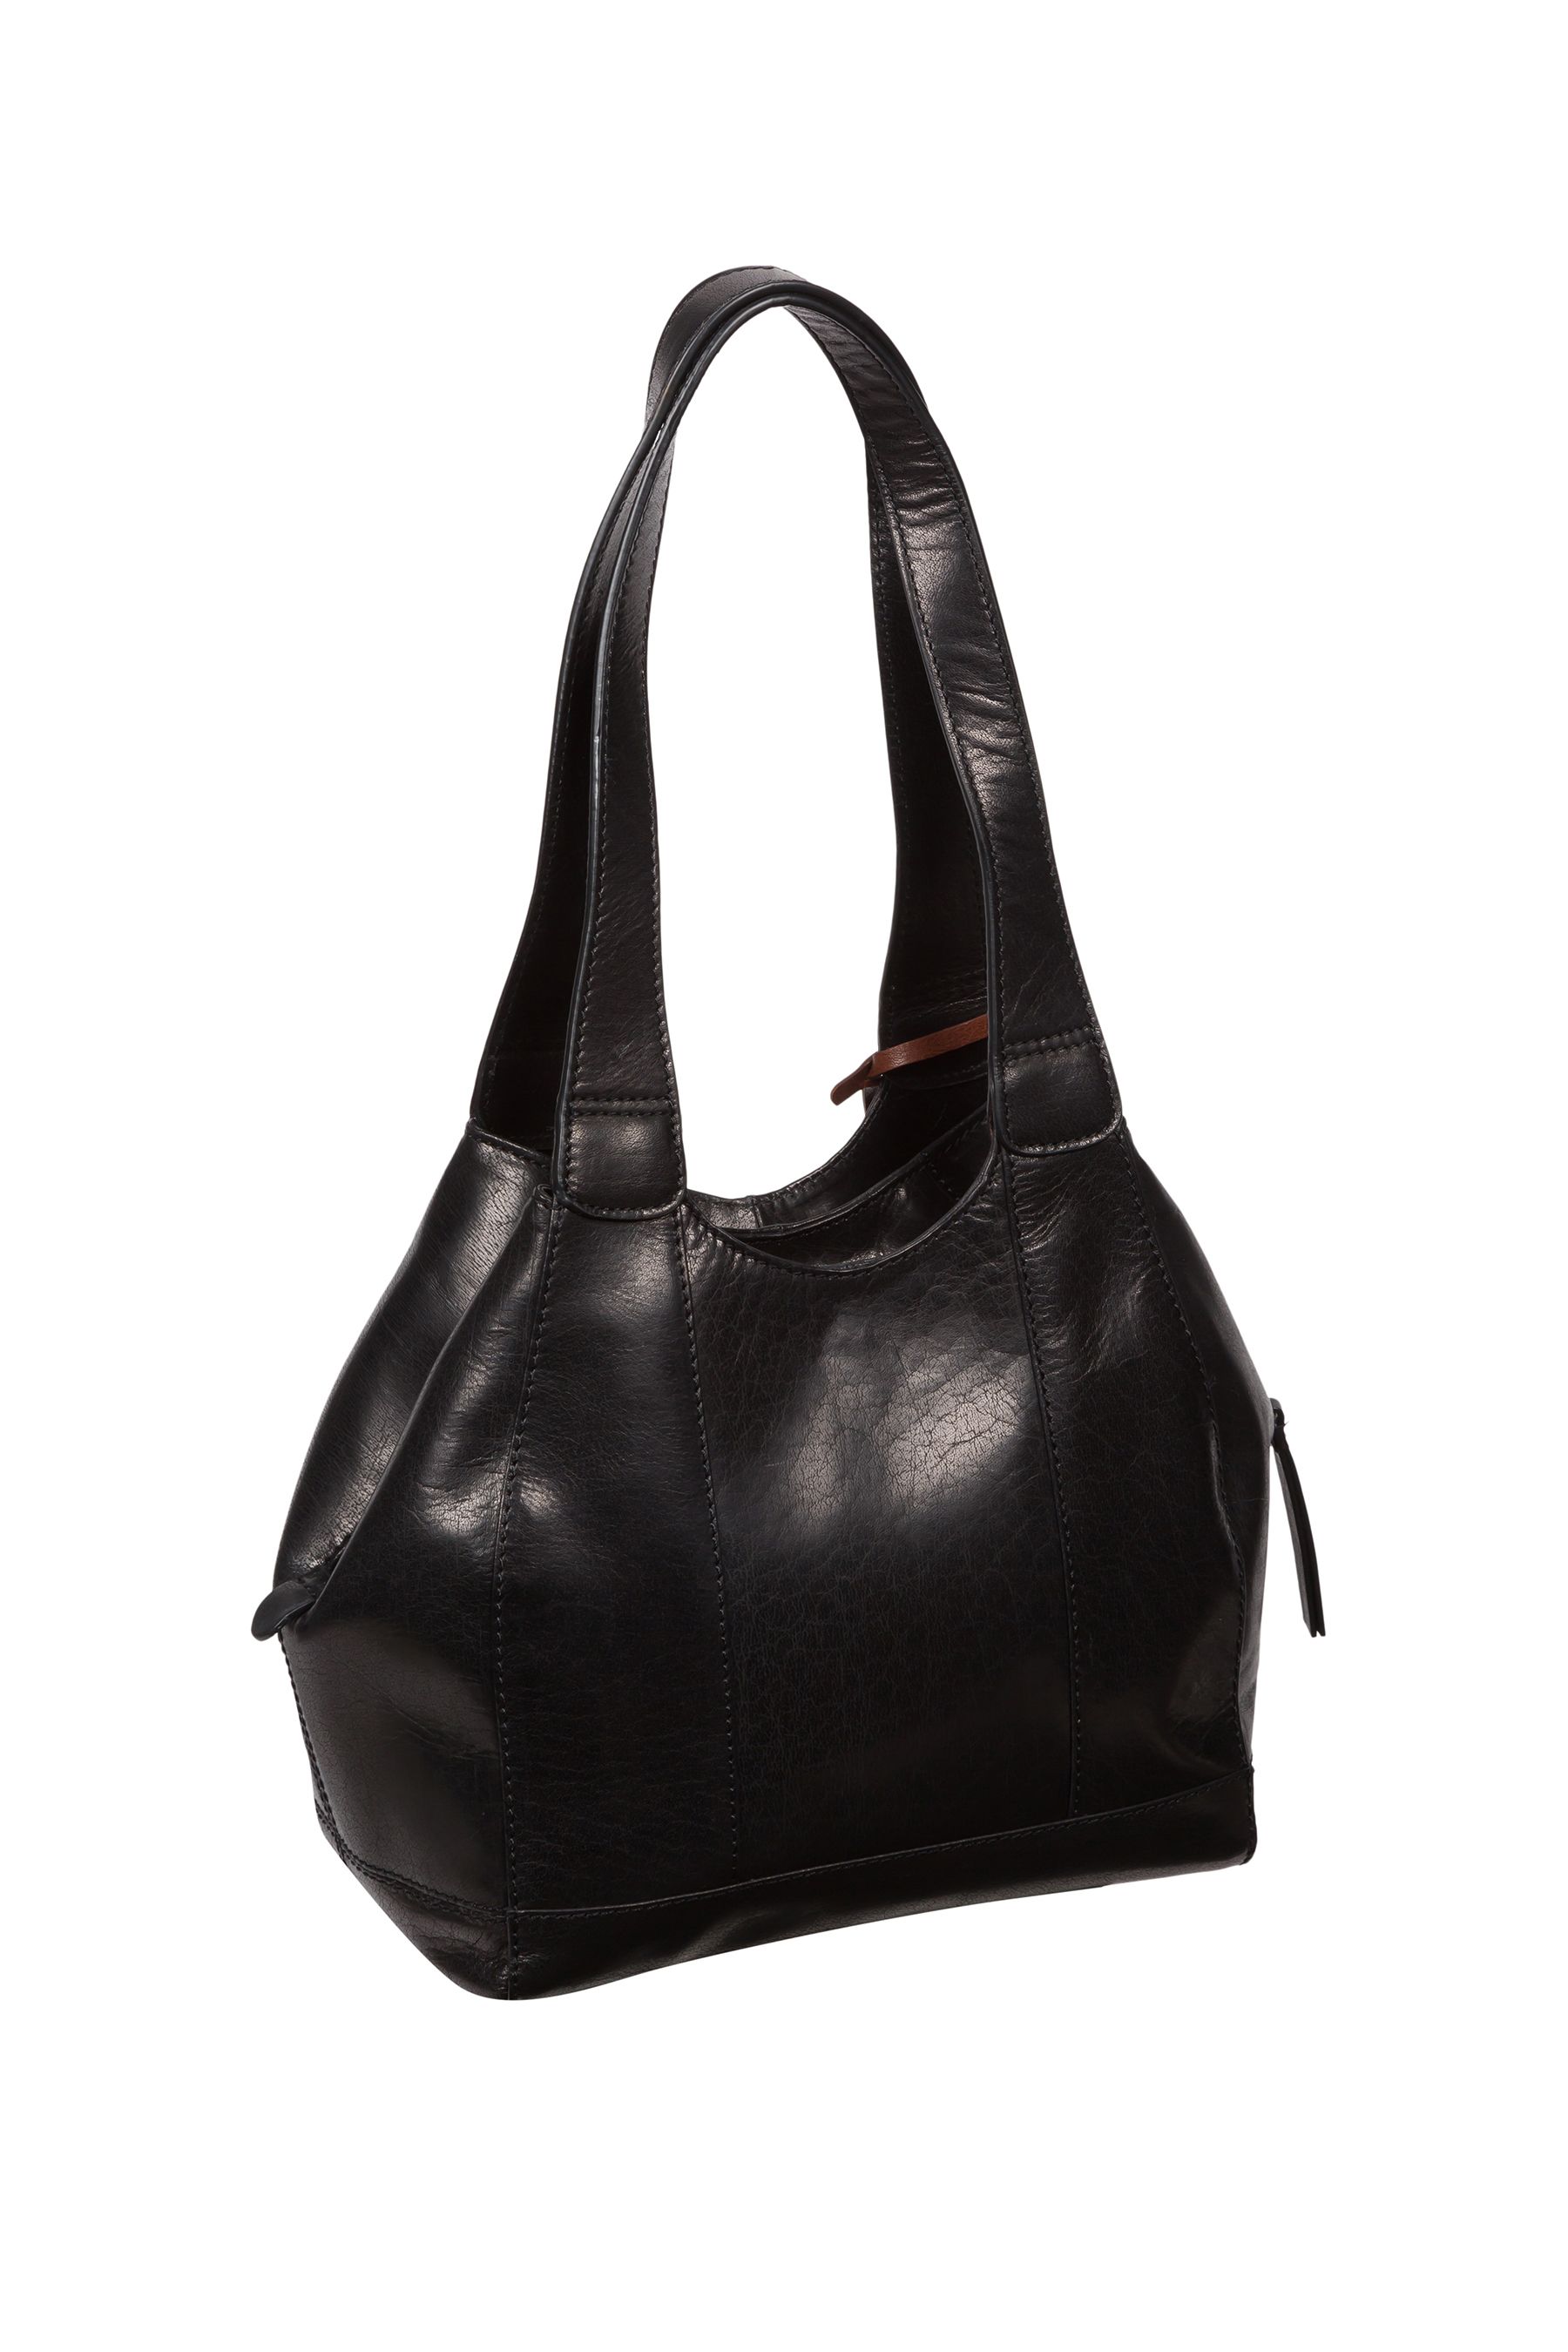 Buy Conkca Juliet Handbag from the Next UK online shop